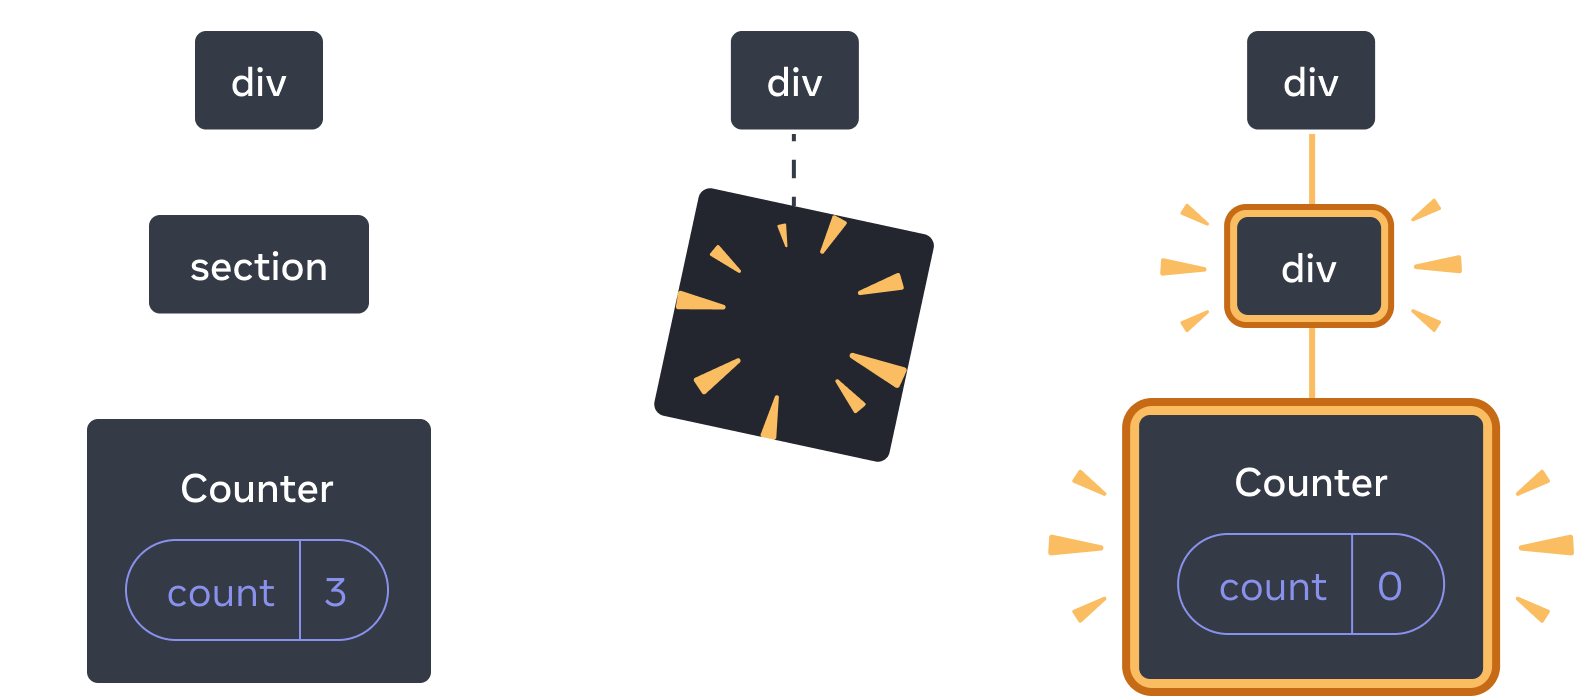 图表包含三个部分，每个部分之间有一个箭头过渡。 第一部分包含一个标记为 `div` 的 React 组件，其中有一个标记为 `section` 的子组件，该组件有一个标记为 `Counter` 的子组件，其中包含一个标记为 `count`、值为 3 的 state 气泡。中间部分具有相同的 `div` 父组件，但子组件现已被删除，由黄色“proof”图像指示。第三部分再次具有相同的 `div` 父级，现在有一个由黄色突出显示并且标记为 `div` 的新子级，还有一个标记为 `Counter` 的新子级，其中包含一个标记为 `count` 且值为 0 的 state 气泡。她们都使用黄色进行了高亮。